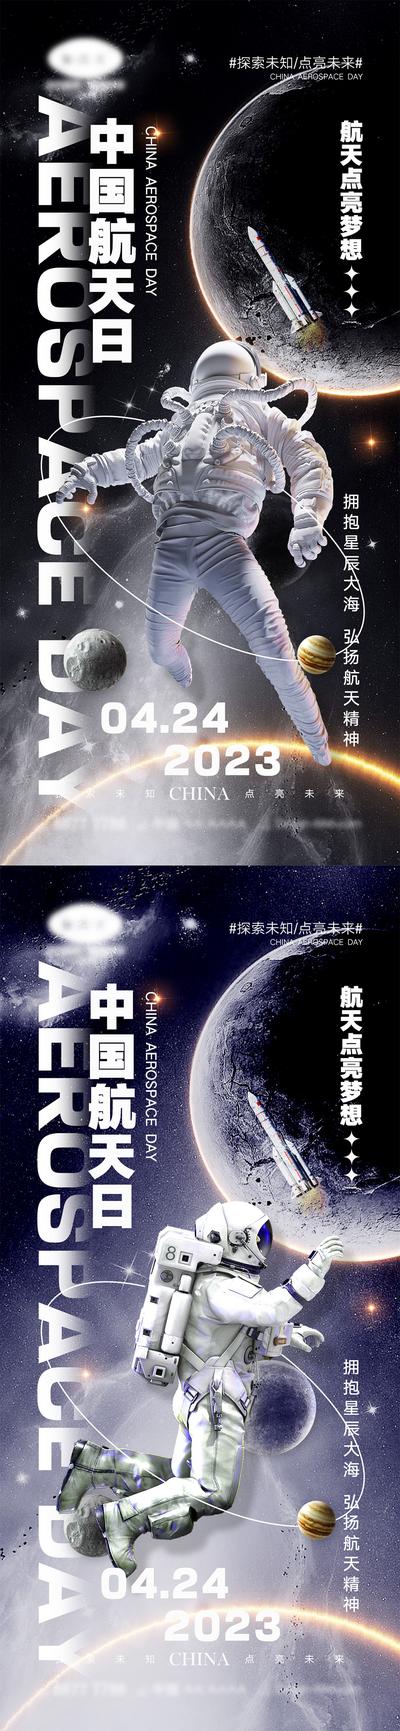 南门网 海报 公立节日 中国航天日 世界航天日 火箭 宇航员 宇宙 地球 太空